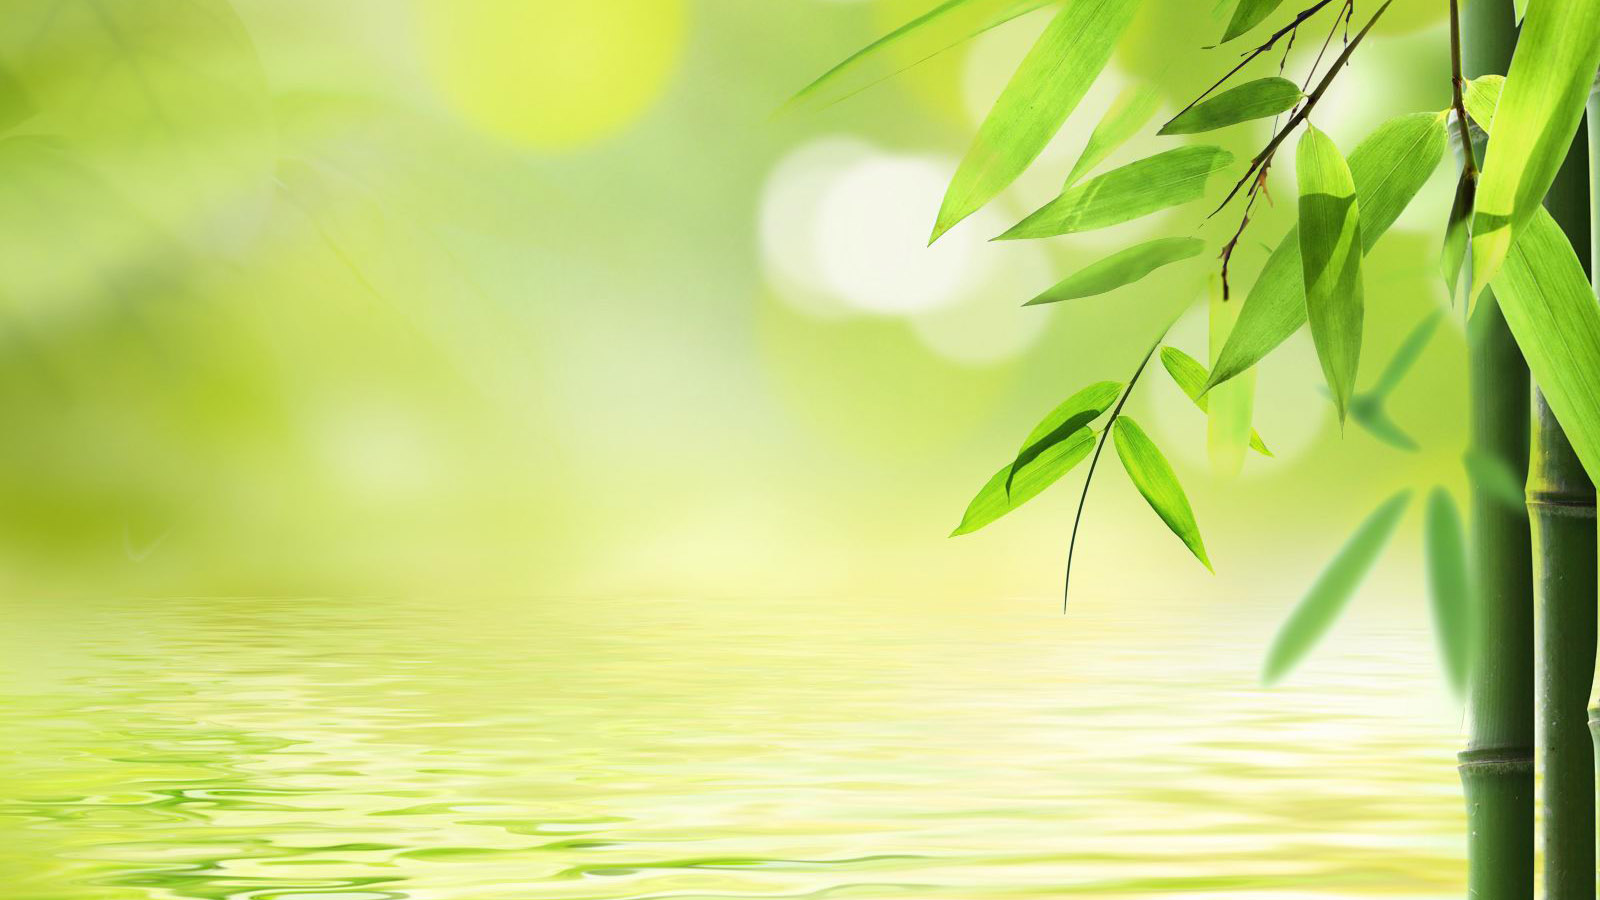 Clear green bamboo computer desktop wallpaper